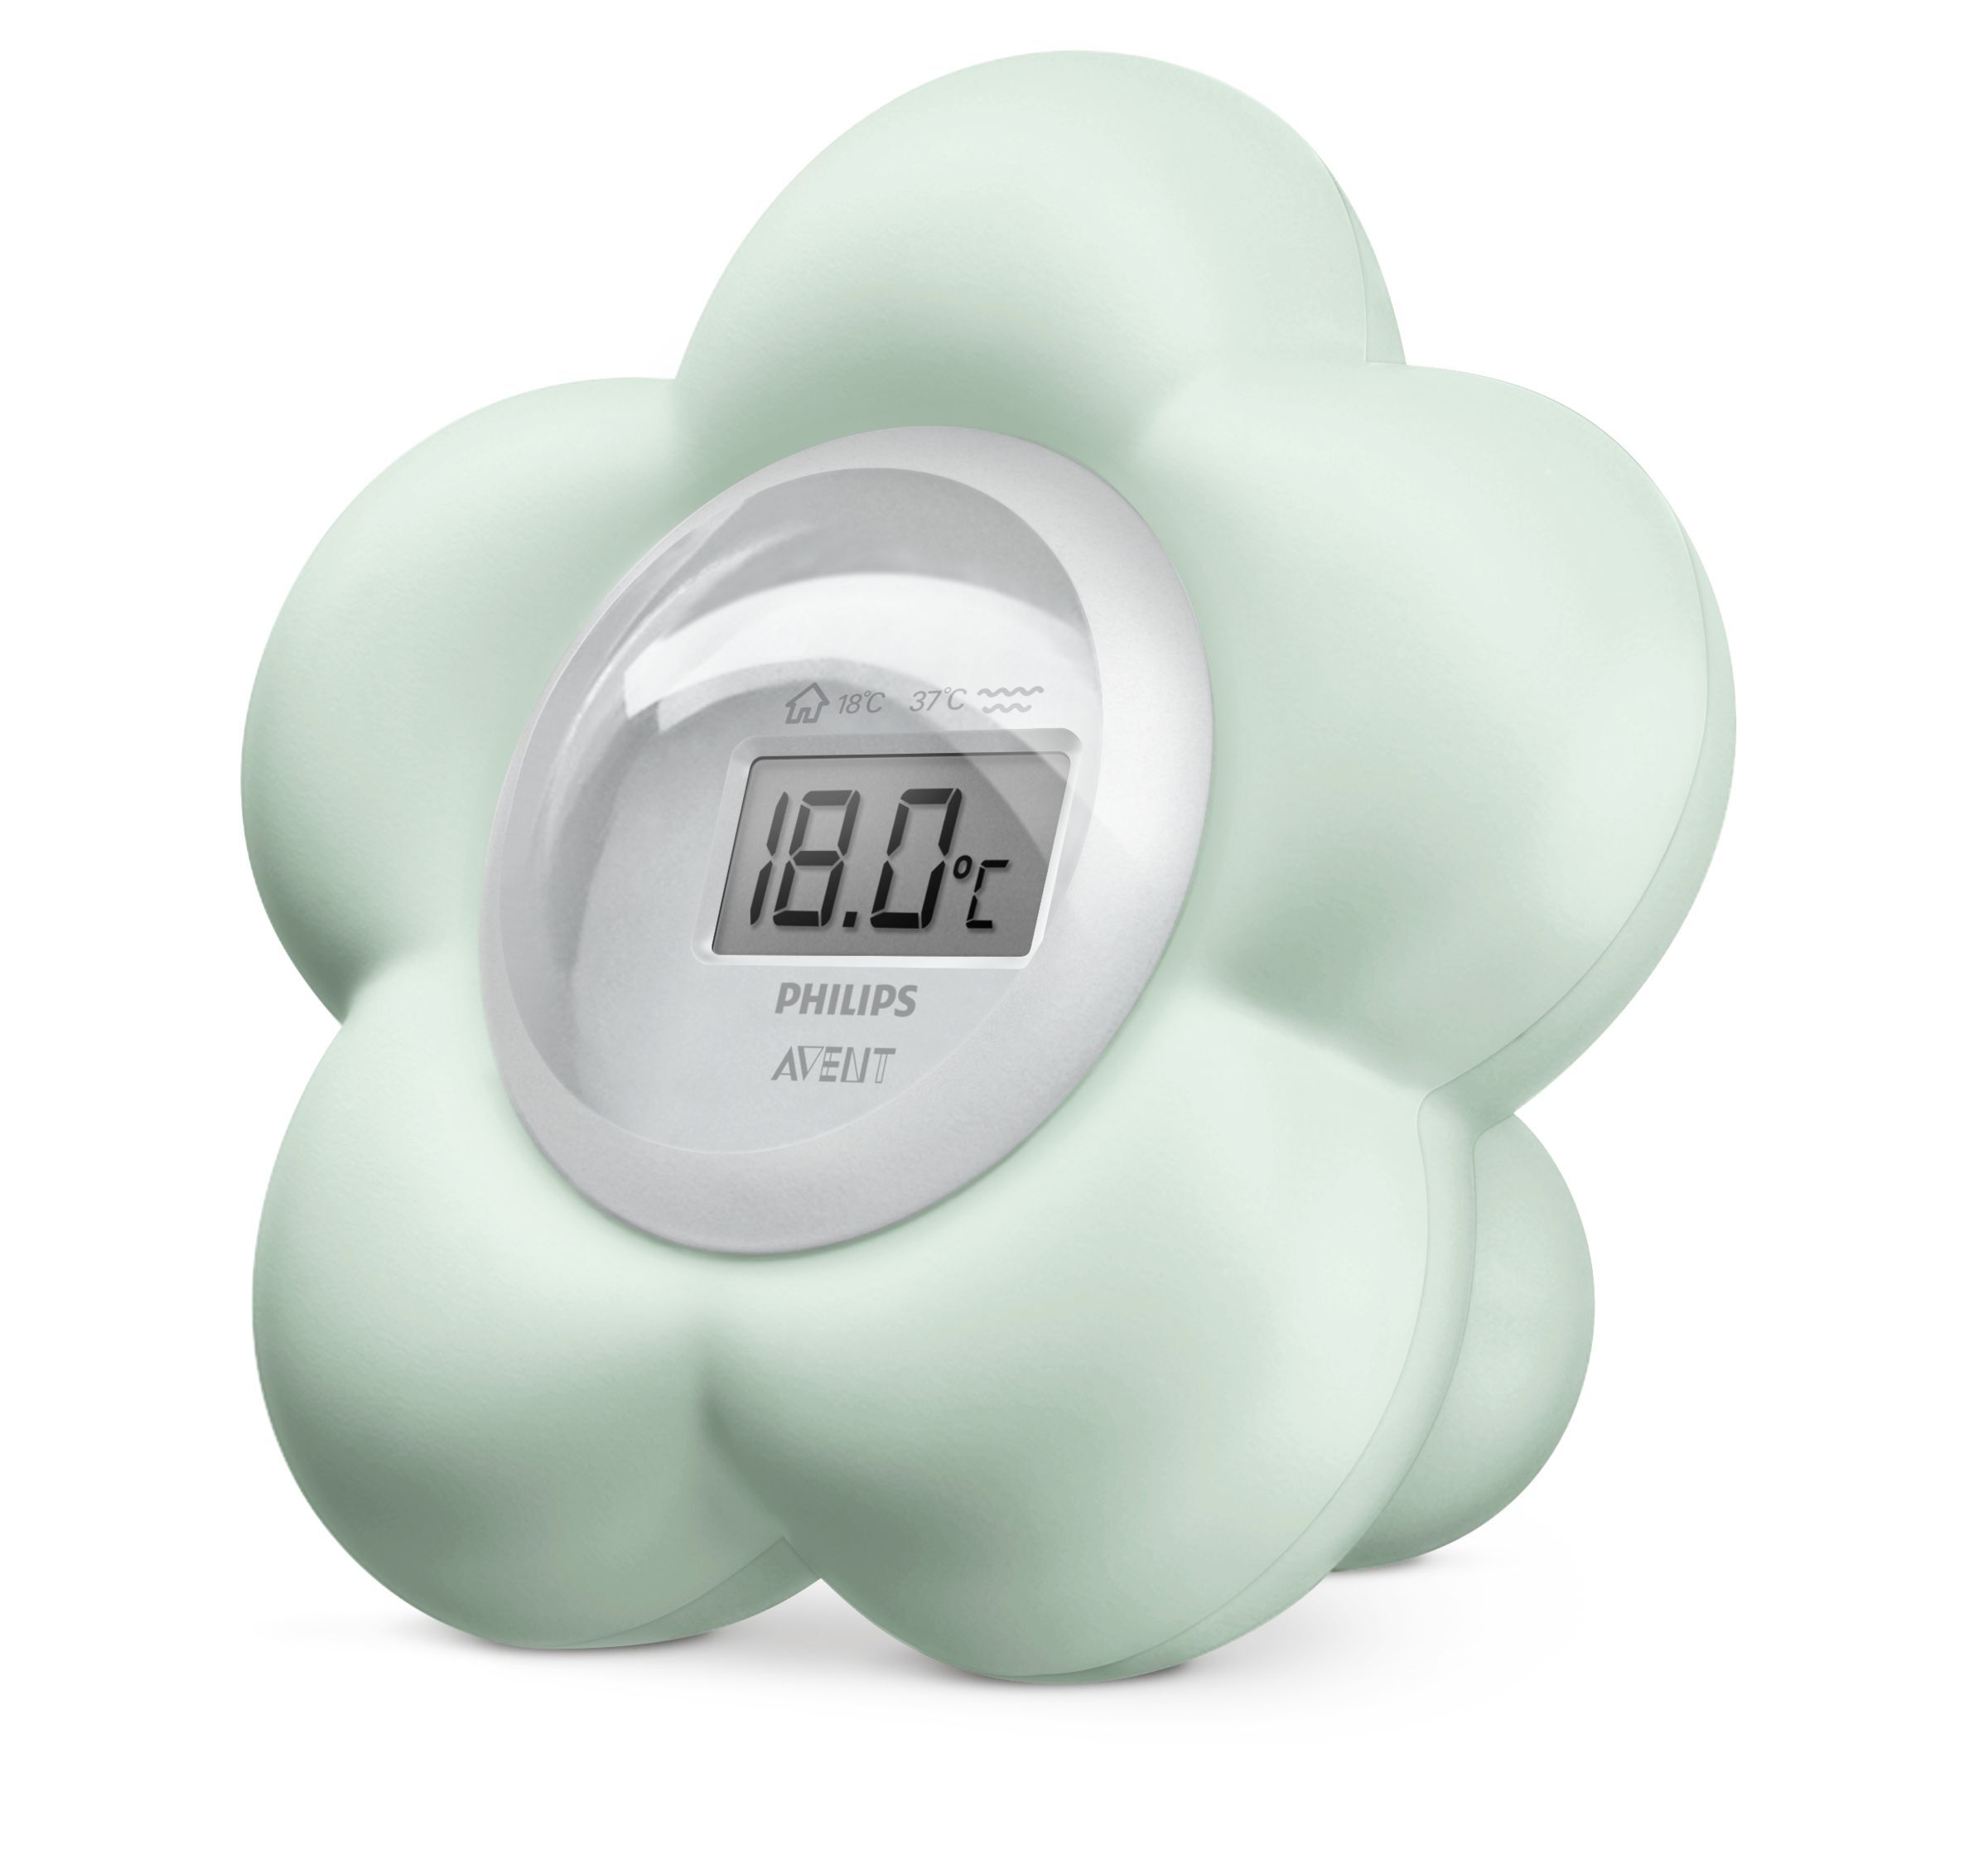 Philips AVENT Digitale thermometer met een uniek, speels design